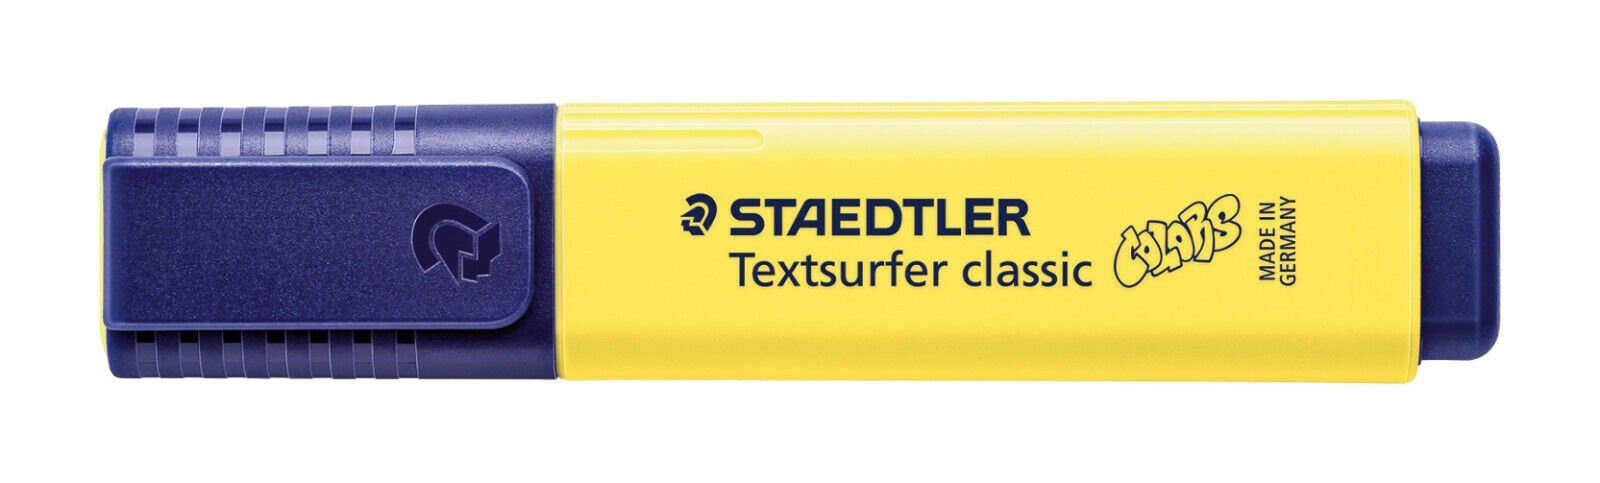 STAEDTLER Marker Staedtler Textsurfer classic colors sonnenblume 364 C-100 Leuchtstift, INK JET SAFE